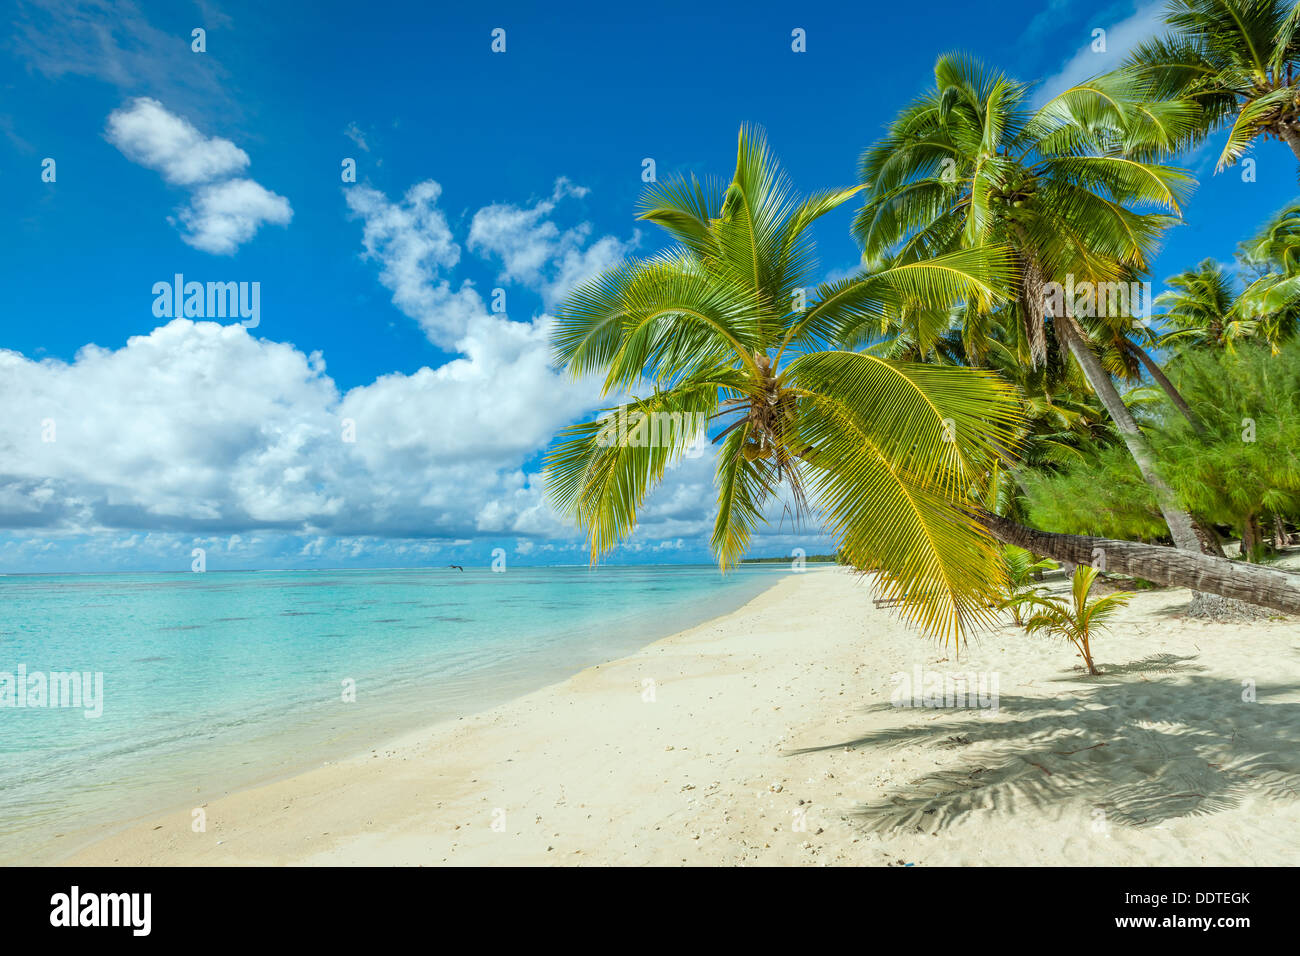 COOK-Inseln, Aitutaki Insel, tropischen weißen Sandstrand mit türkisfarbenem Wasser und Palmen - Strand Amuri, Südpazifik Stockfoto